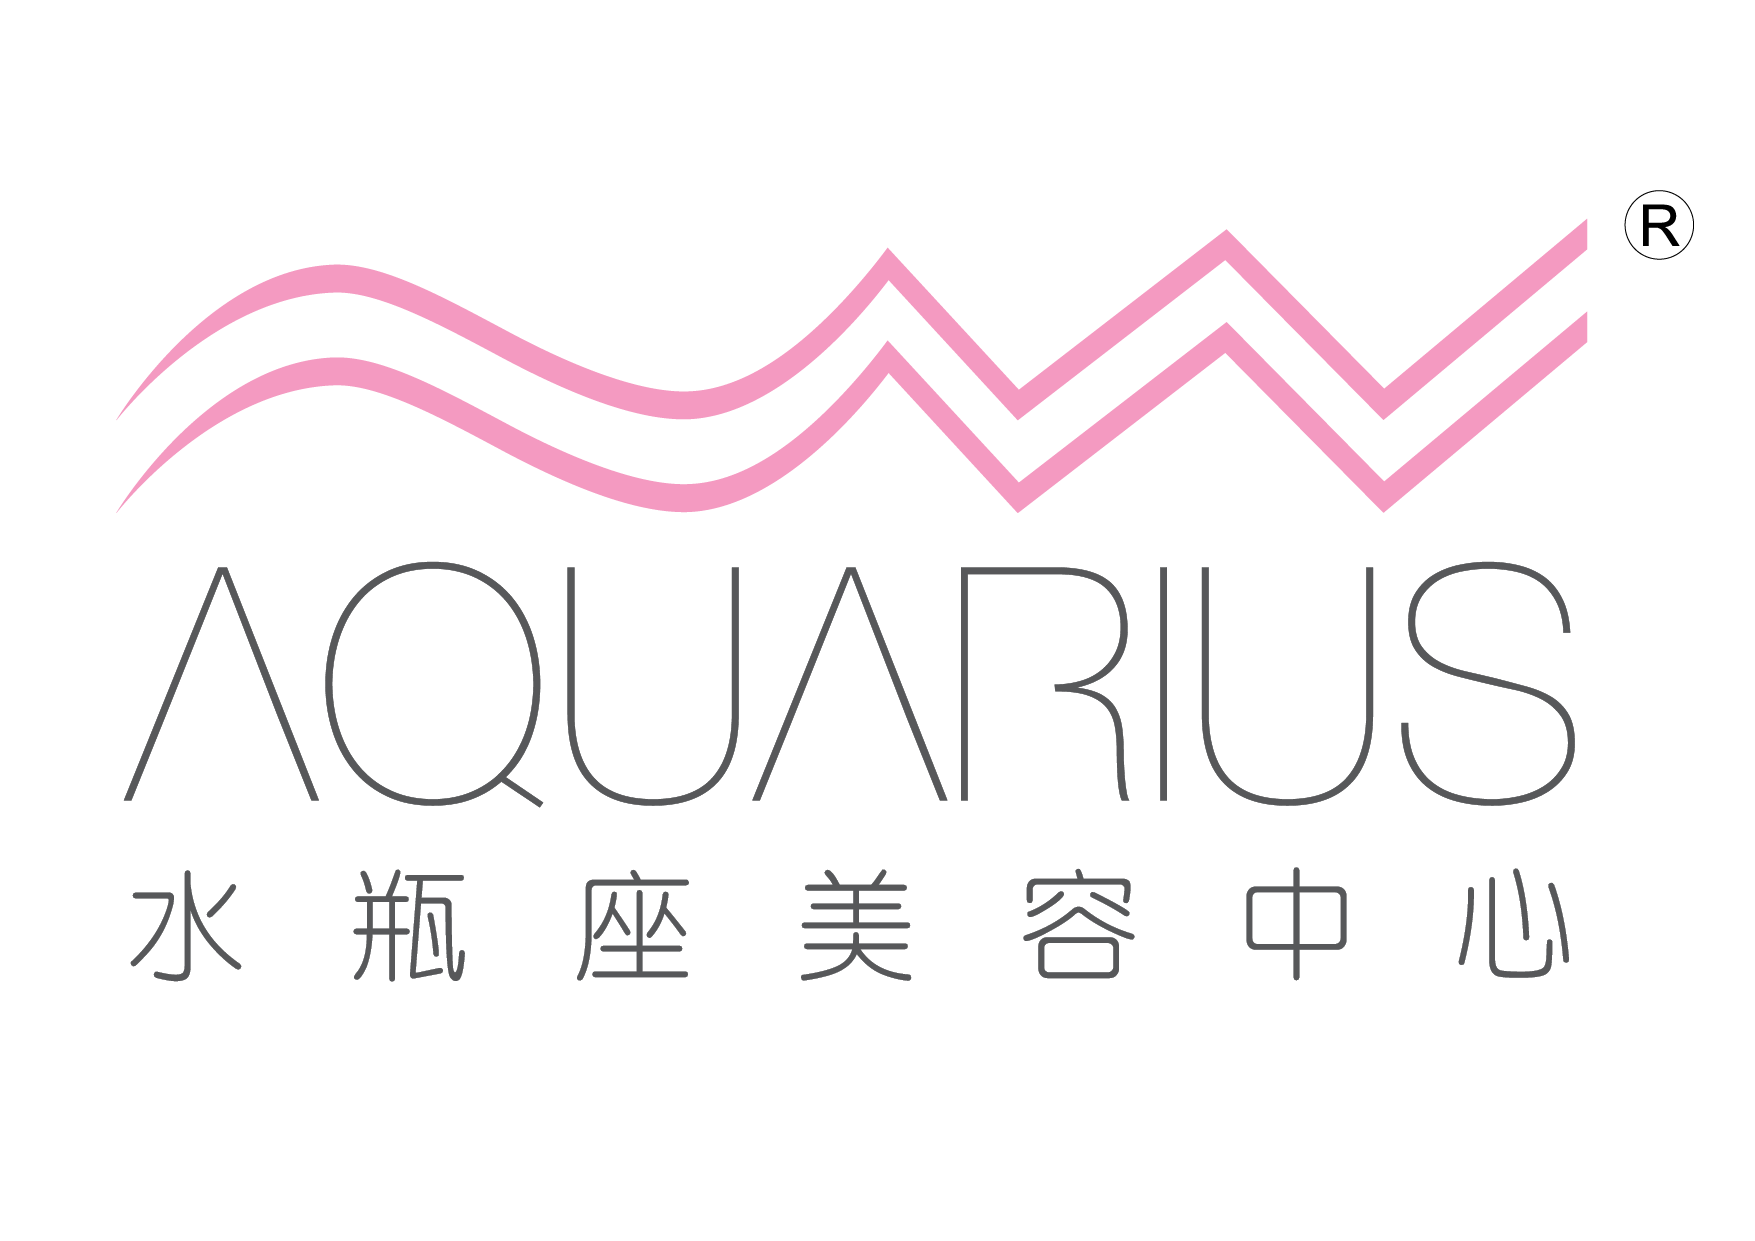 Aquarius Beauty